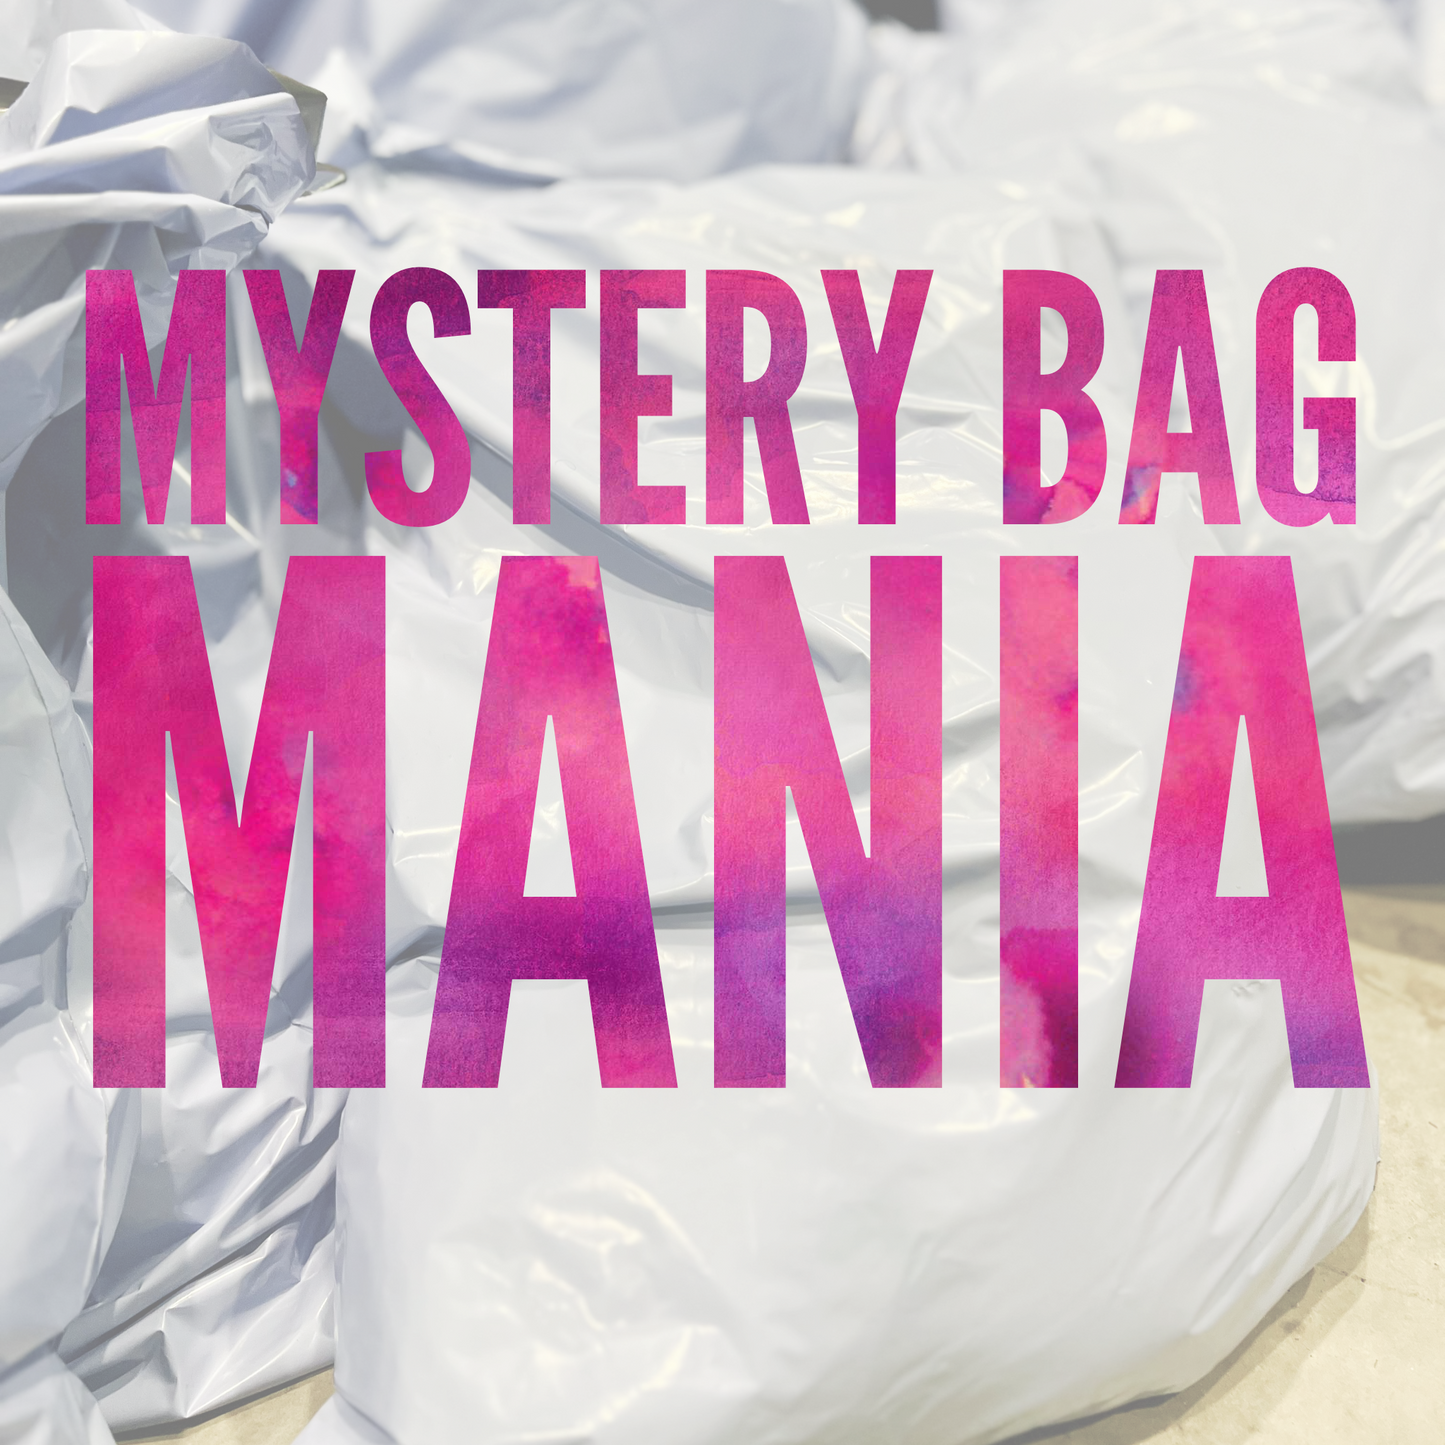 Mystery Bag Mania